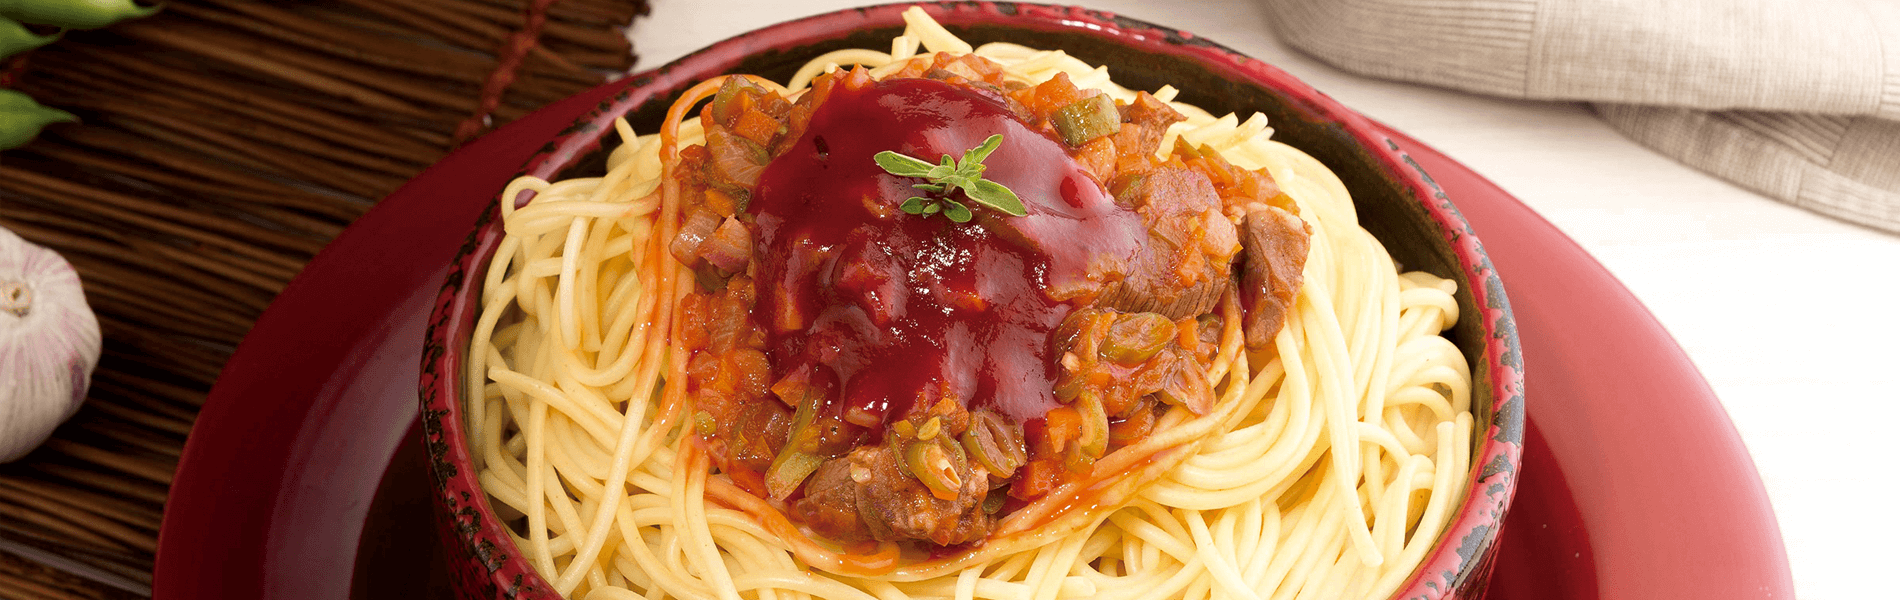 Gulash de Carne con Spaghetti Doria Y Salsa Lista de Tomate Doria Ranchero